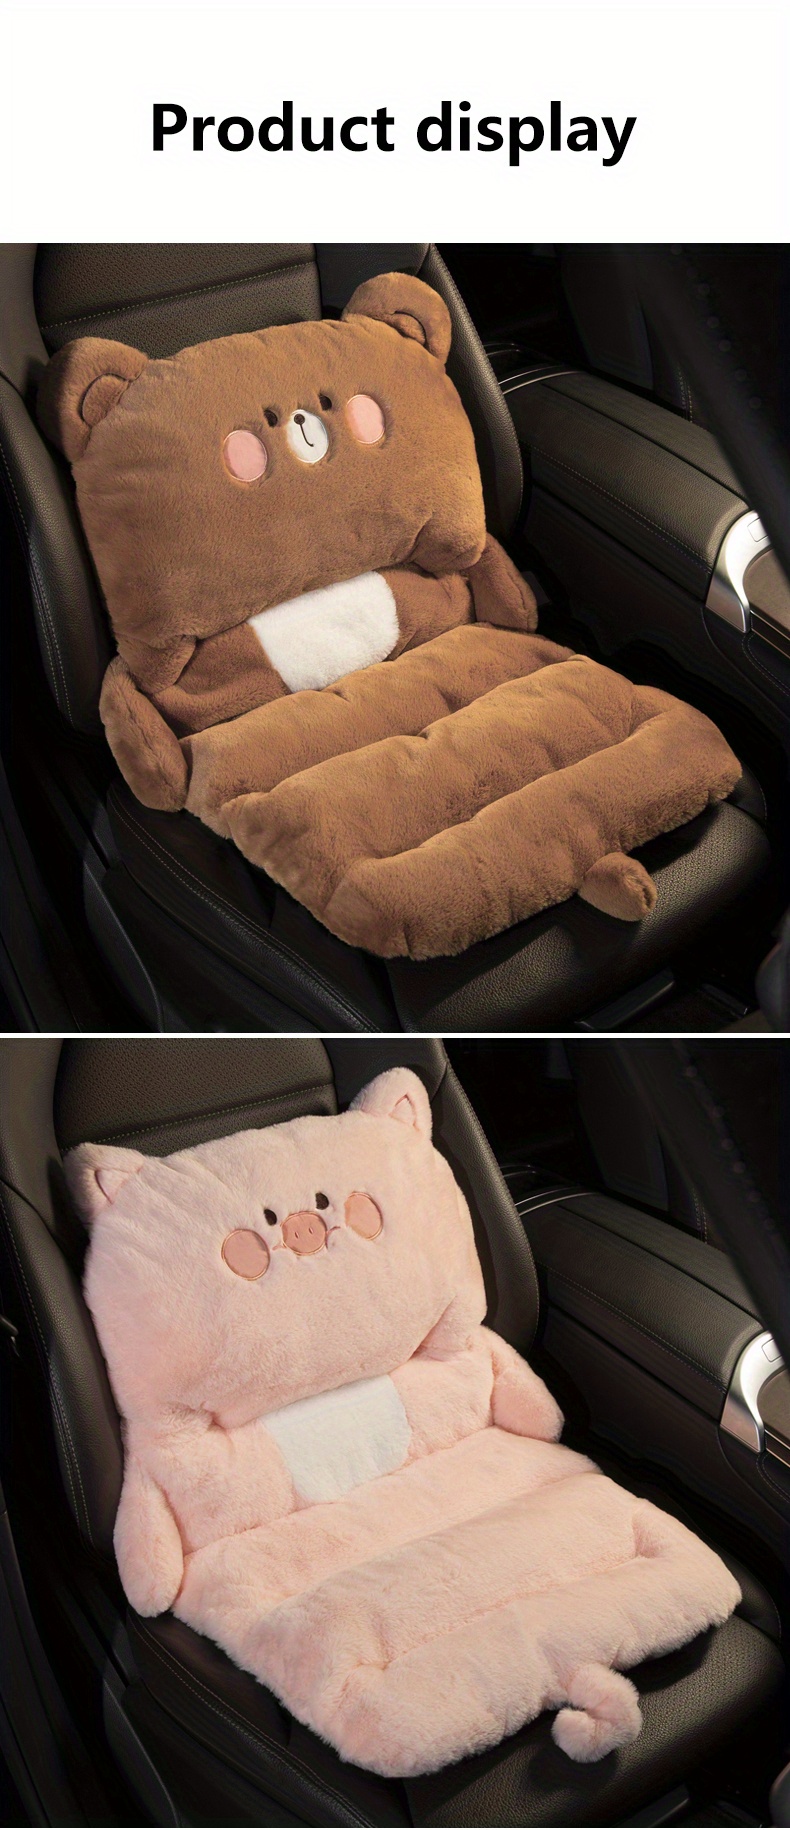 Car cushion Winter plush car seat cushion cute car seat cover cartoon waist  cushion to keep warm seat pad accessories